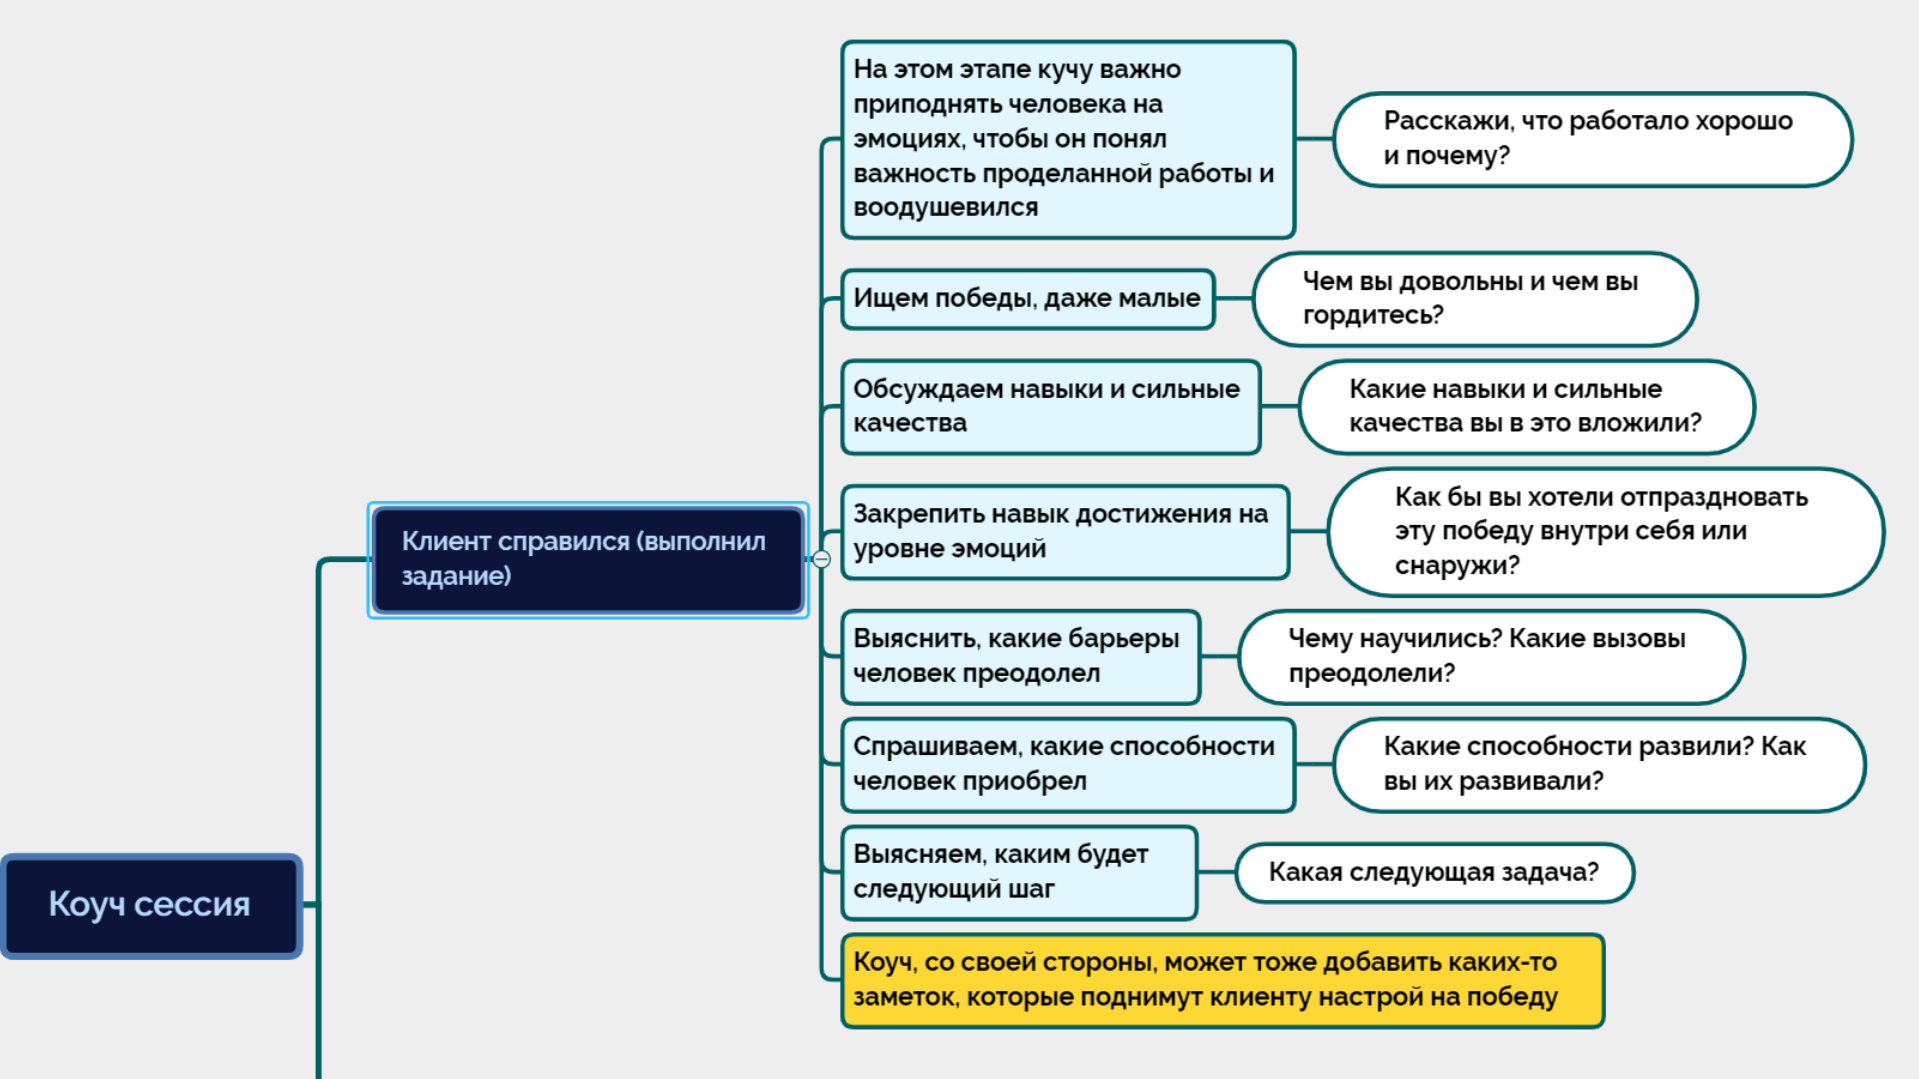 Тест егэ по русскому языку по демоверсии фипи 2019. вариант 1.